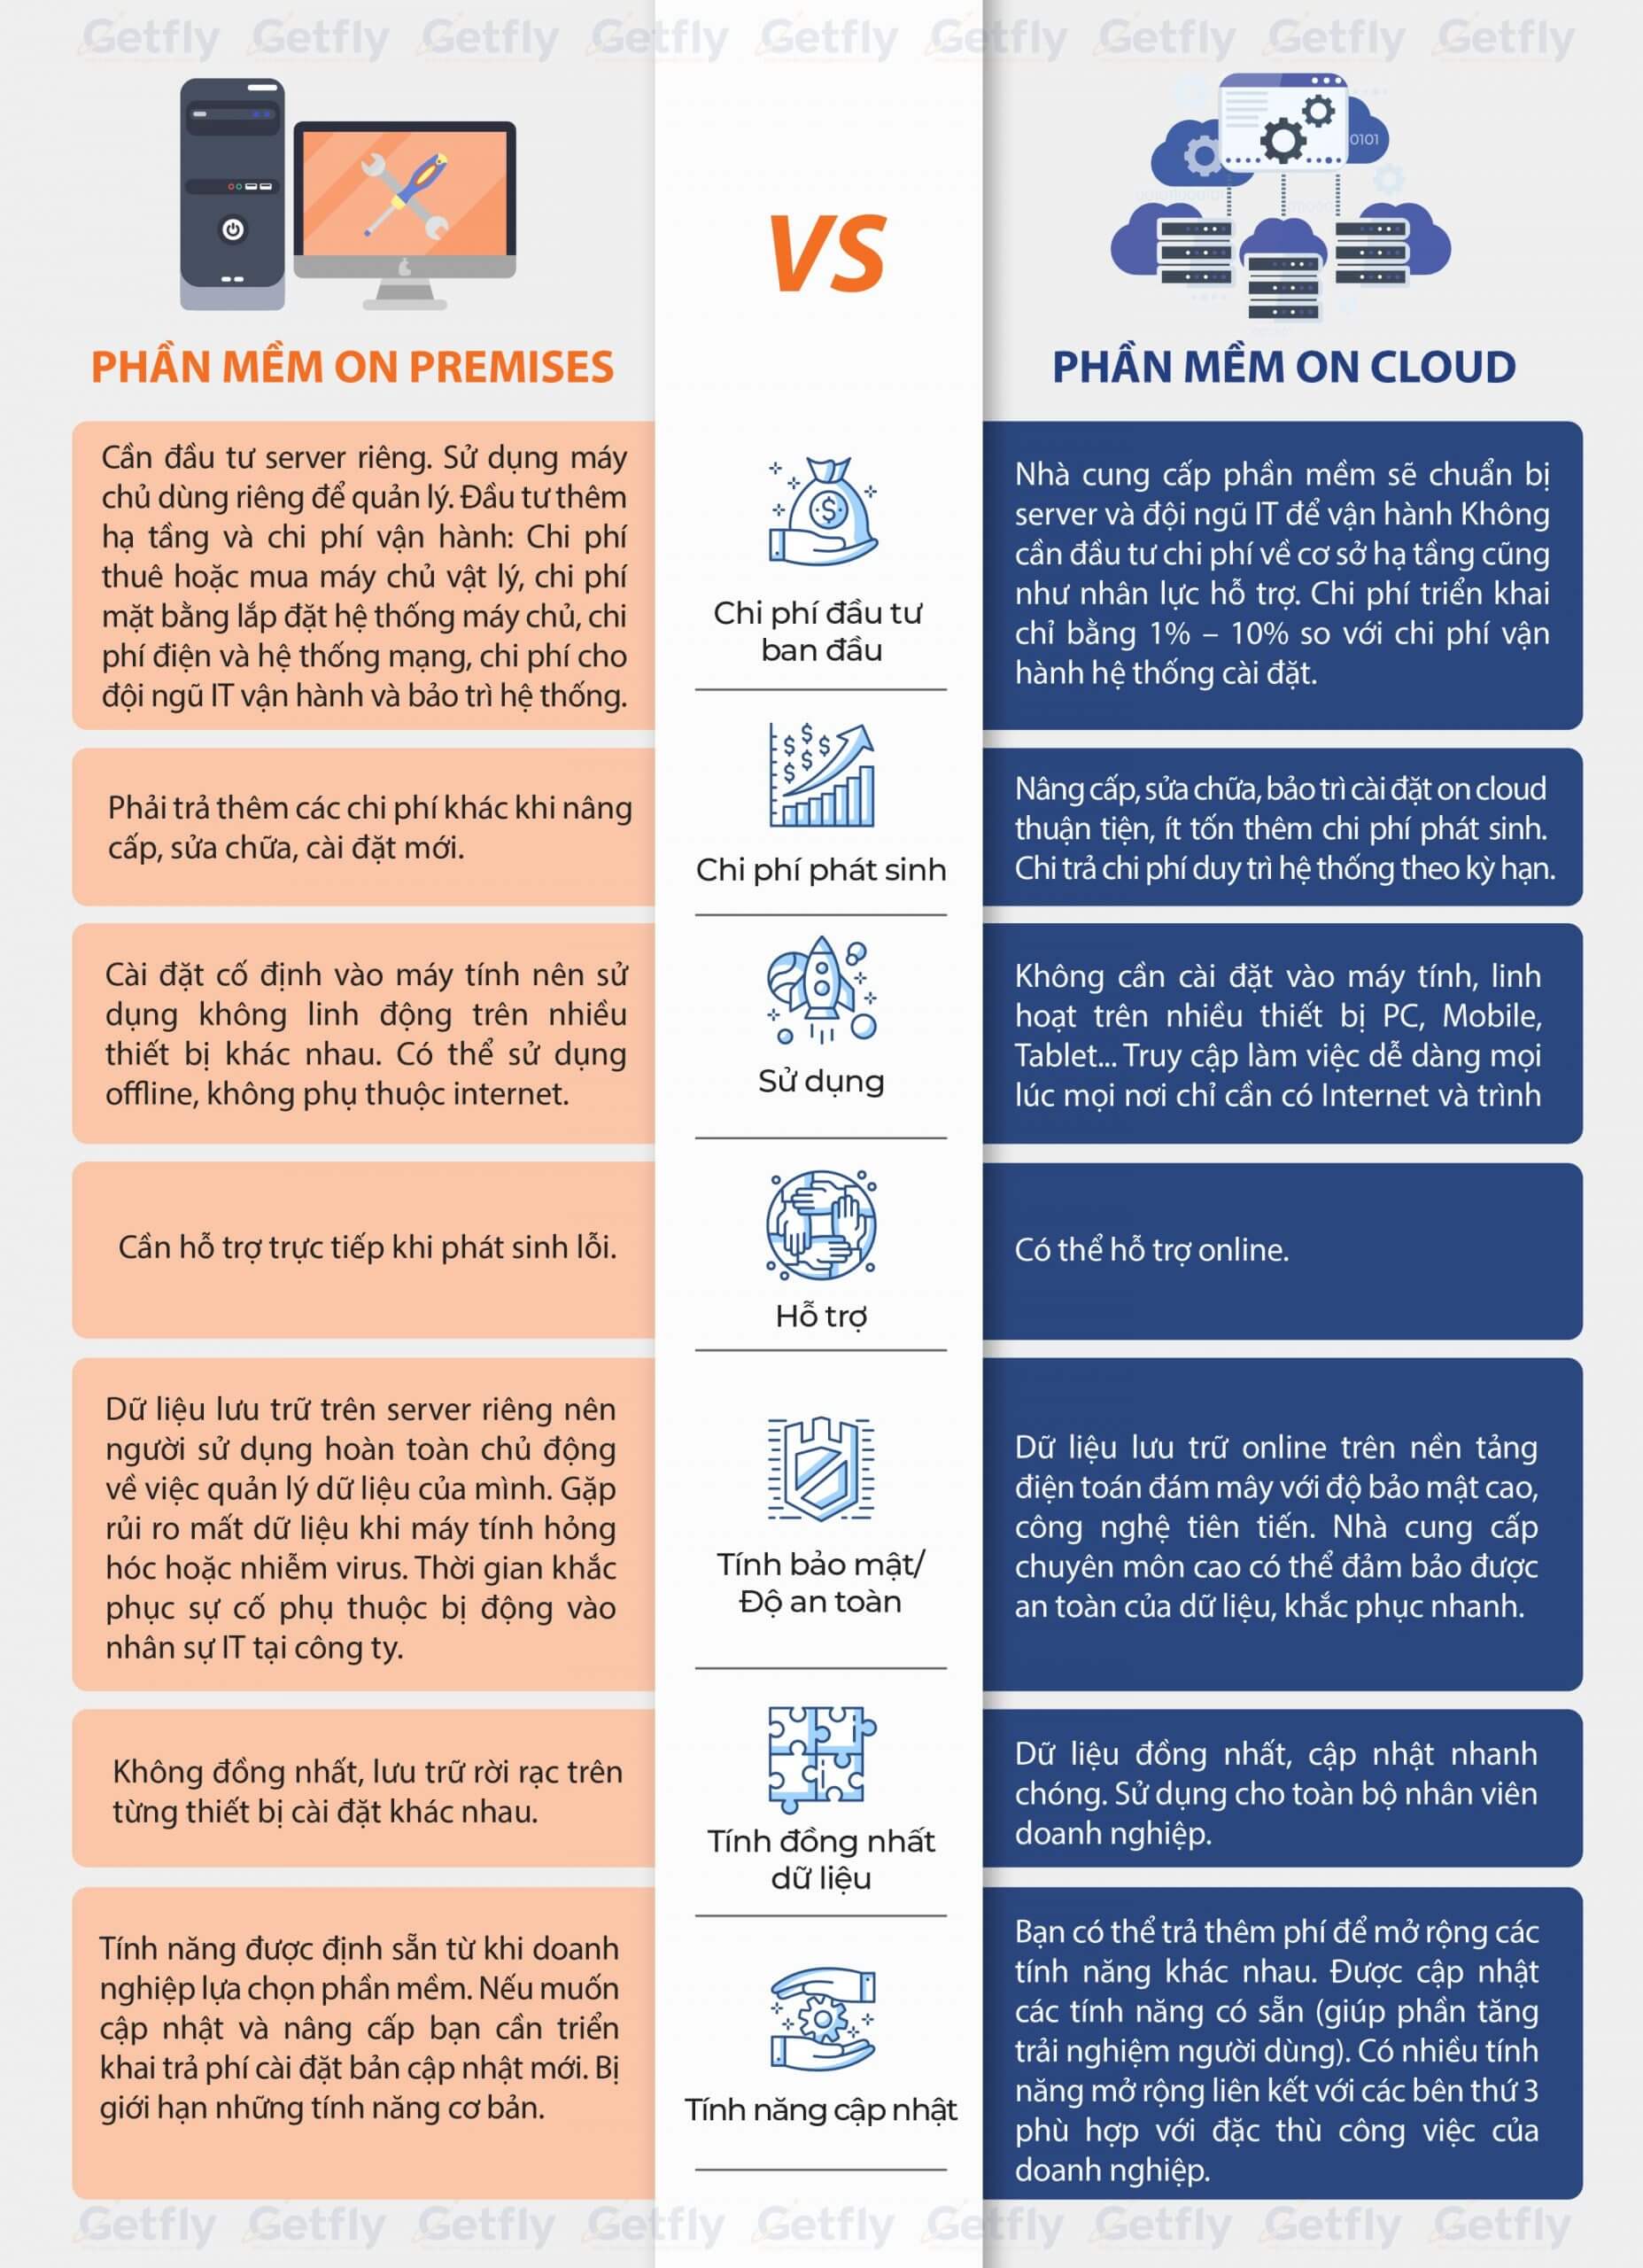 So sánh phần mềm On Premises và phần mềm On Cloud